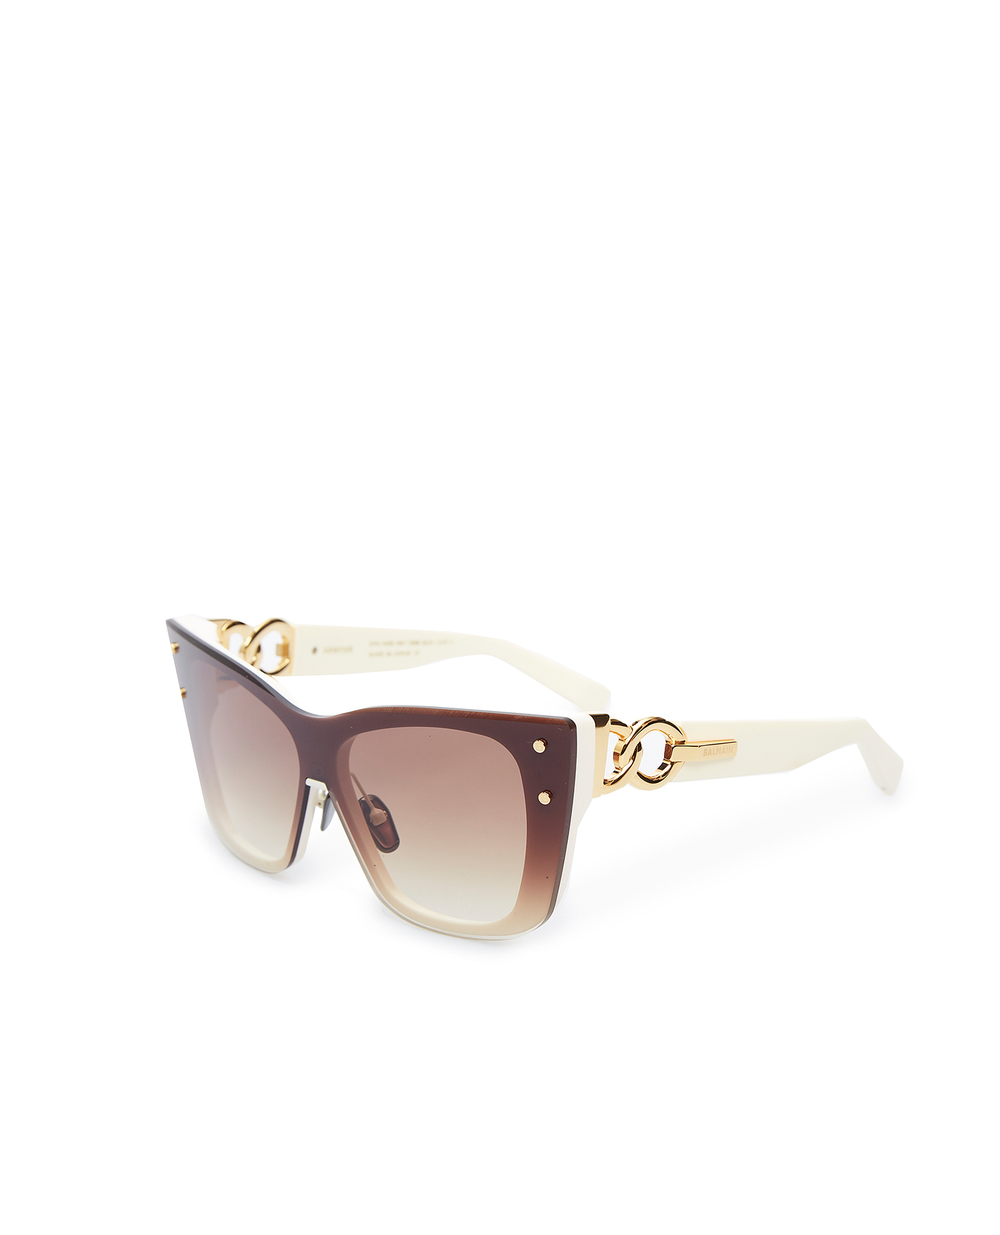 Солнцезащитные очки Balmain BPS-106B-150, коричневый цвет • Купить в интернет-магазине Kameron